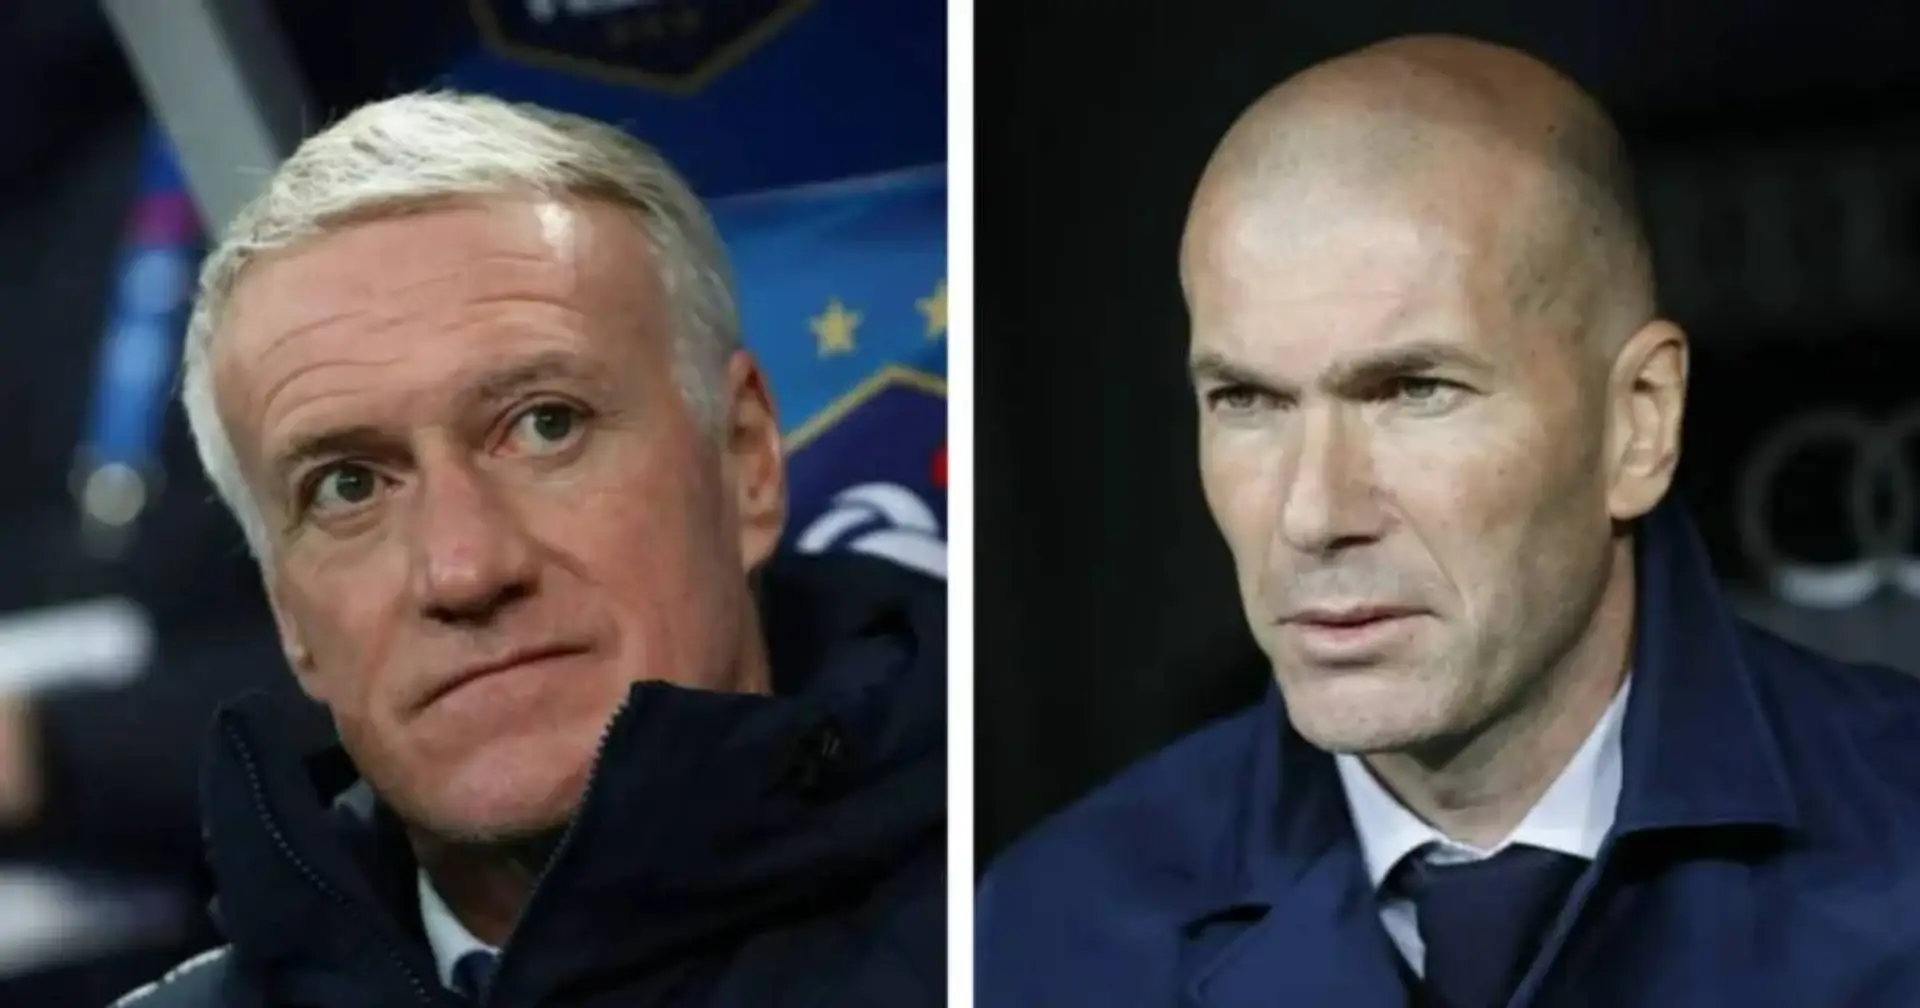 Zidane agotará su contrato y Deschamps de momento no se mueve de la selección gala (fiabilidad: 5 estrellas)